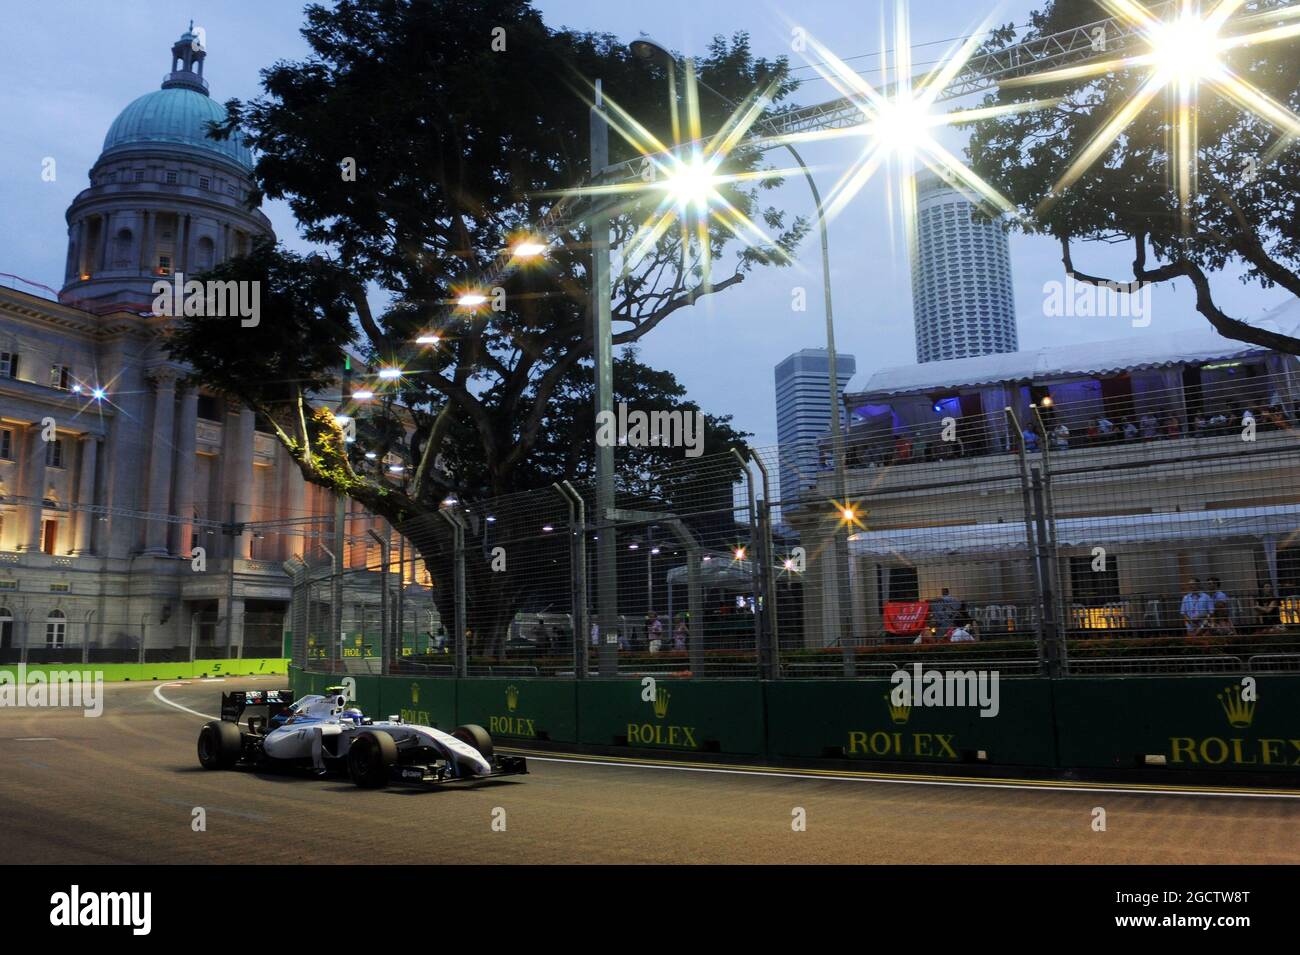 Valtteri Bottas (fin) Williams FW36. Gran Premio di Singapore, sabato 20 settembre 2014. Circuito Marina Bay Street, Singapore. Foto Stock